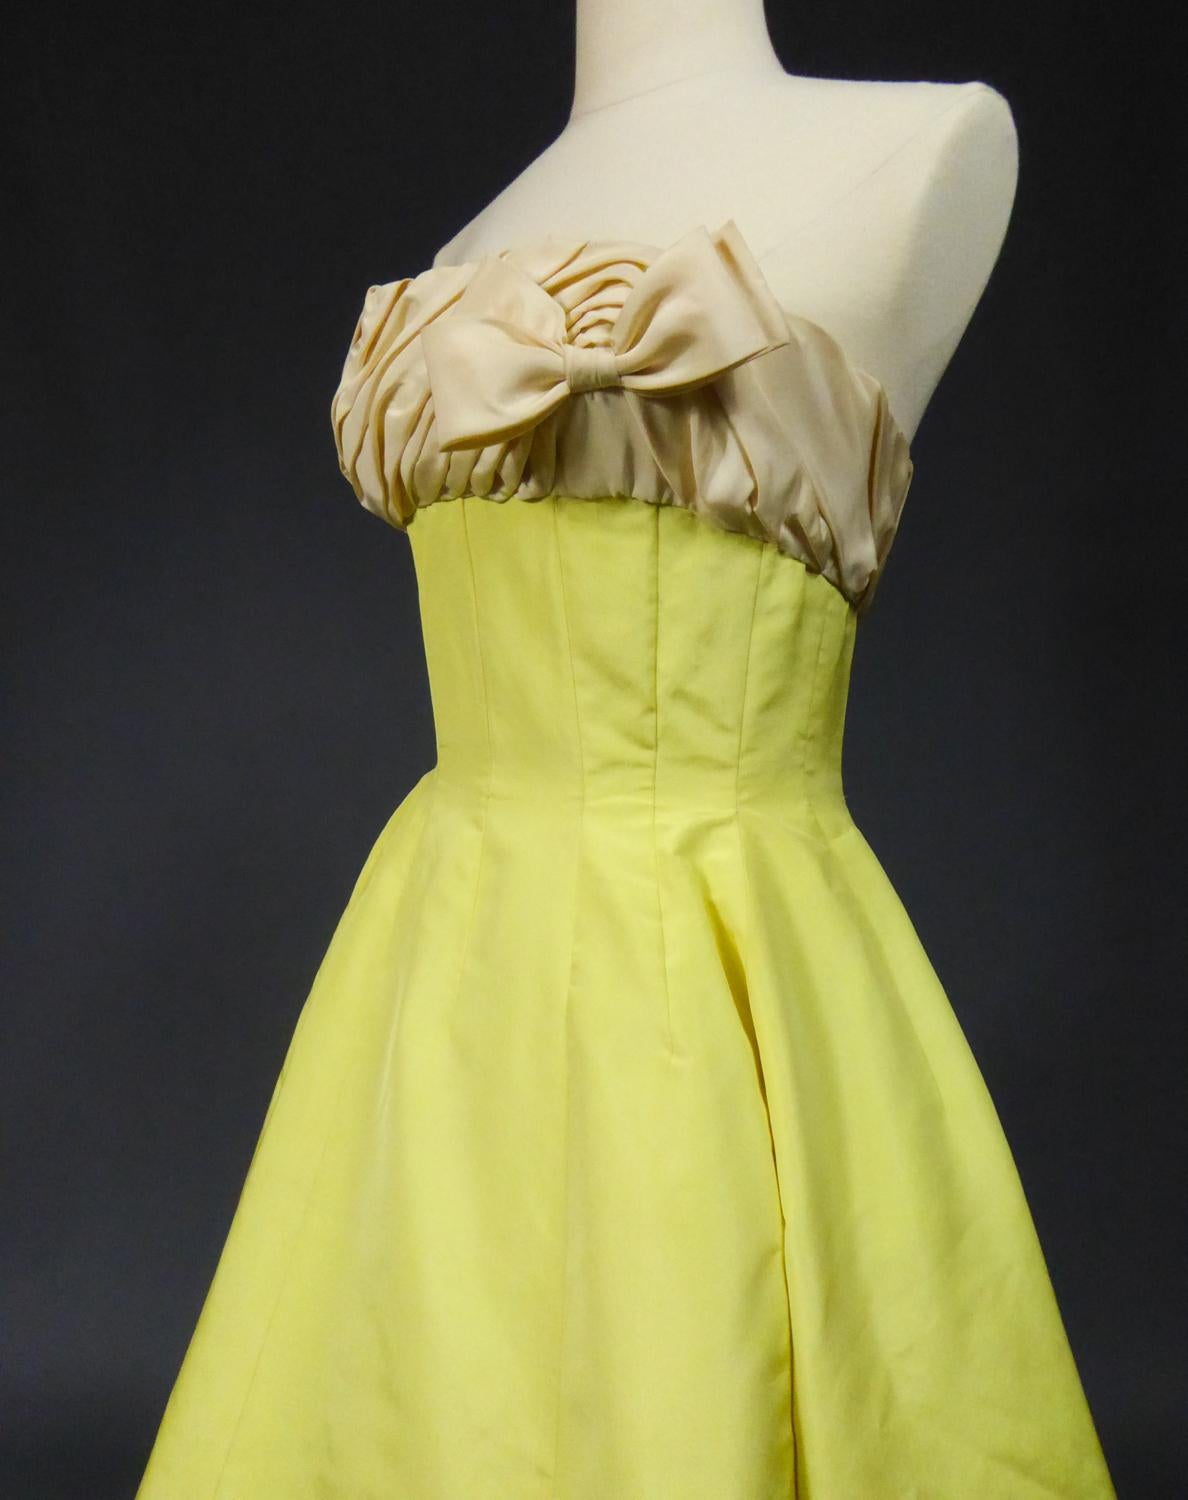 A Pierre Balmain Ottoman Silk Faille Couture Ball-Gown N° 83213 Paris Circa 1958 For Sale 12